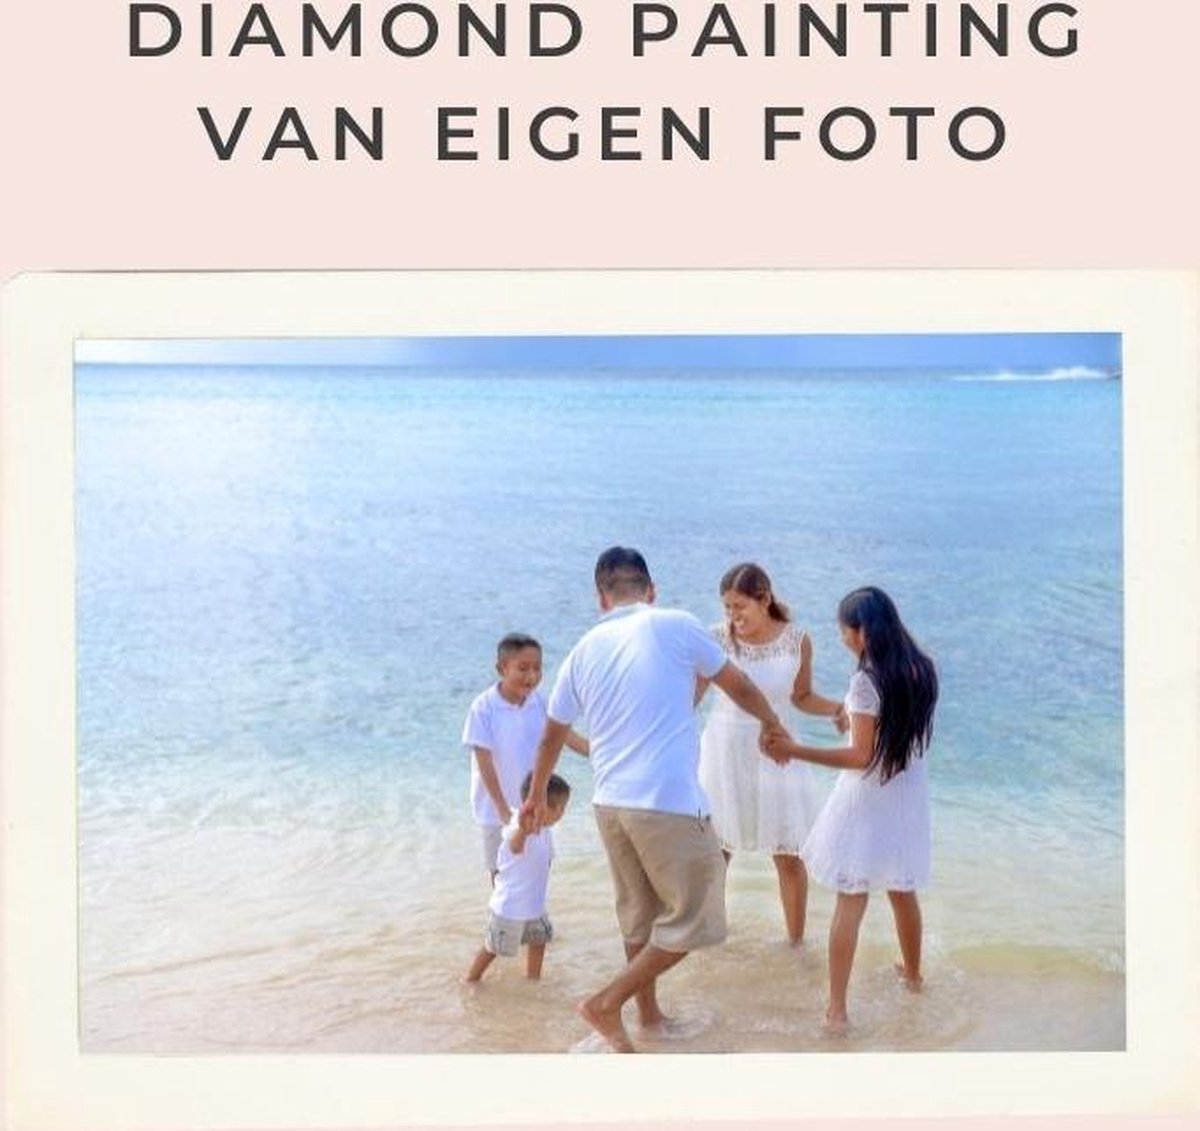 Diamond painting eigen foto - Geproduceerd in Nederland - 20 x 30 cm - dibond materiaal - vierkante steentjes - Binnen 2-3 werkdagen in huis